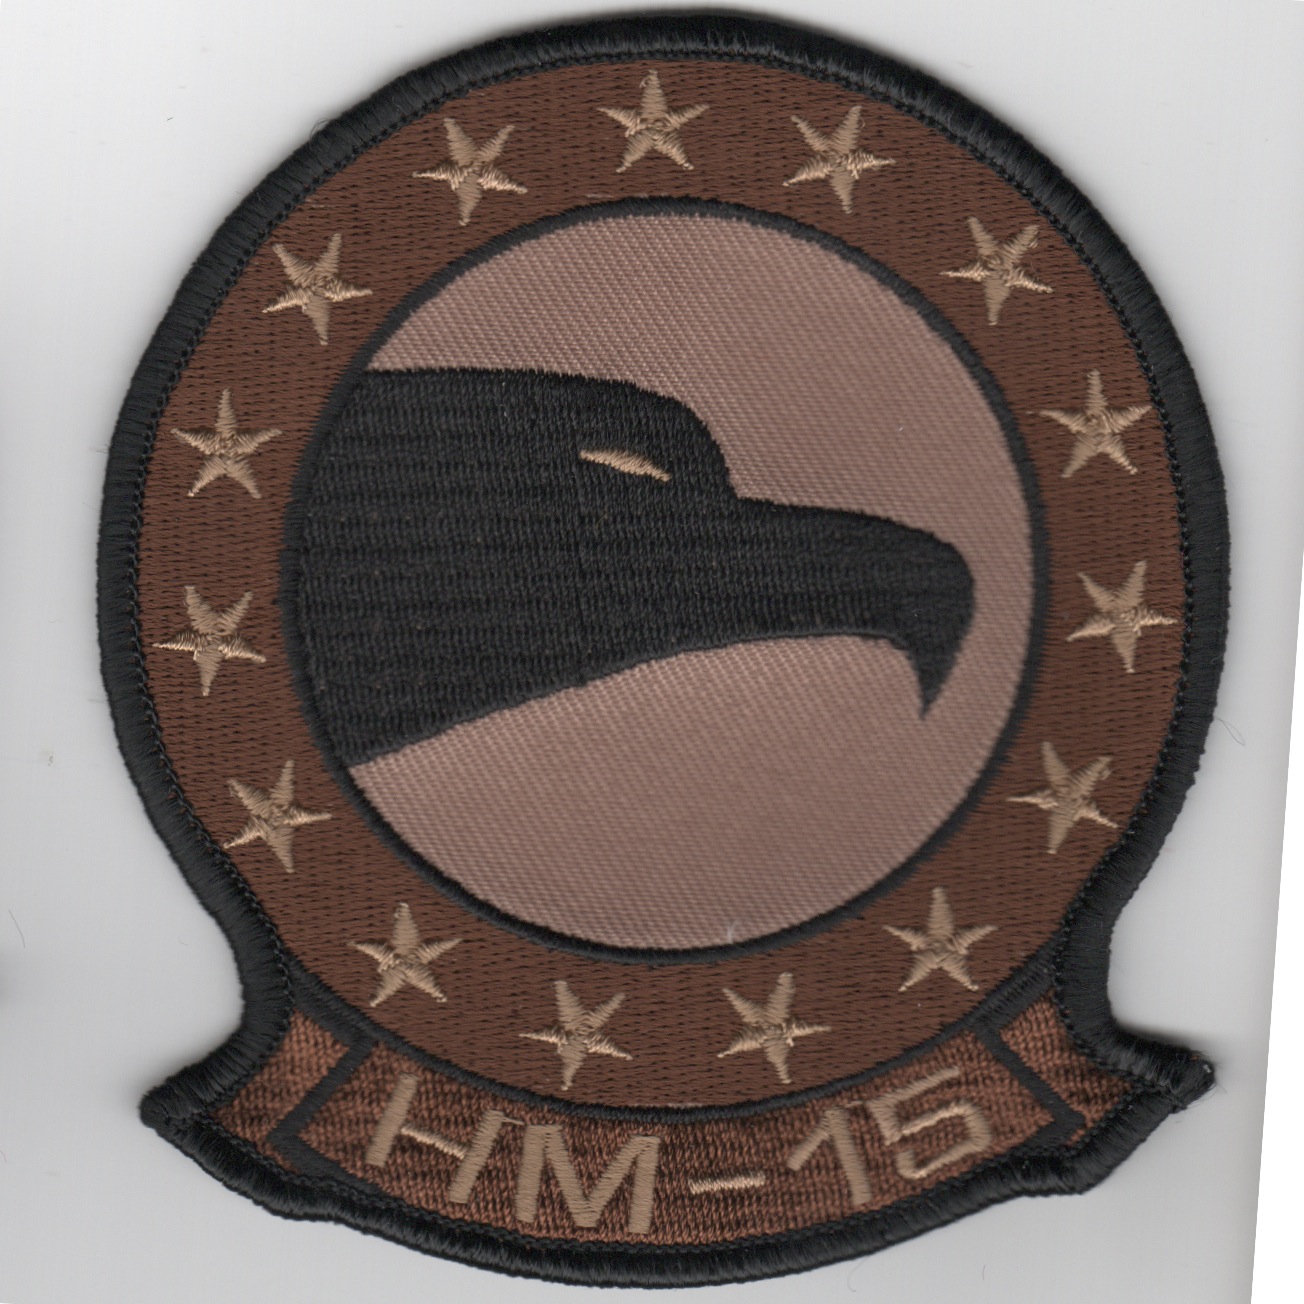 HM-15 Squadron Patch (Des)